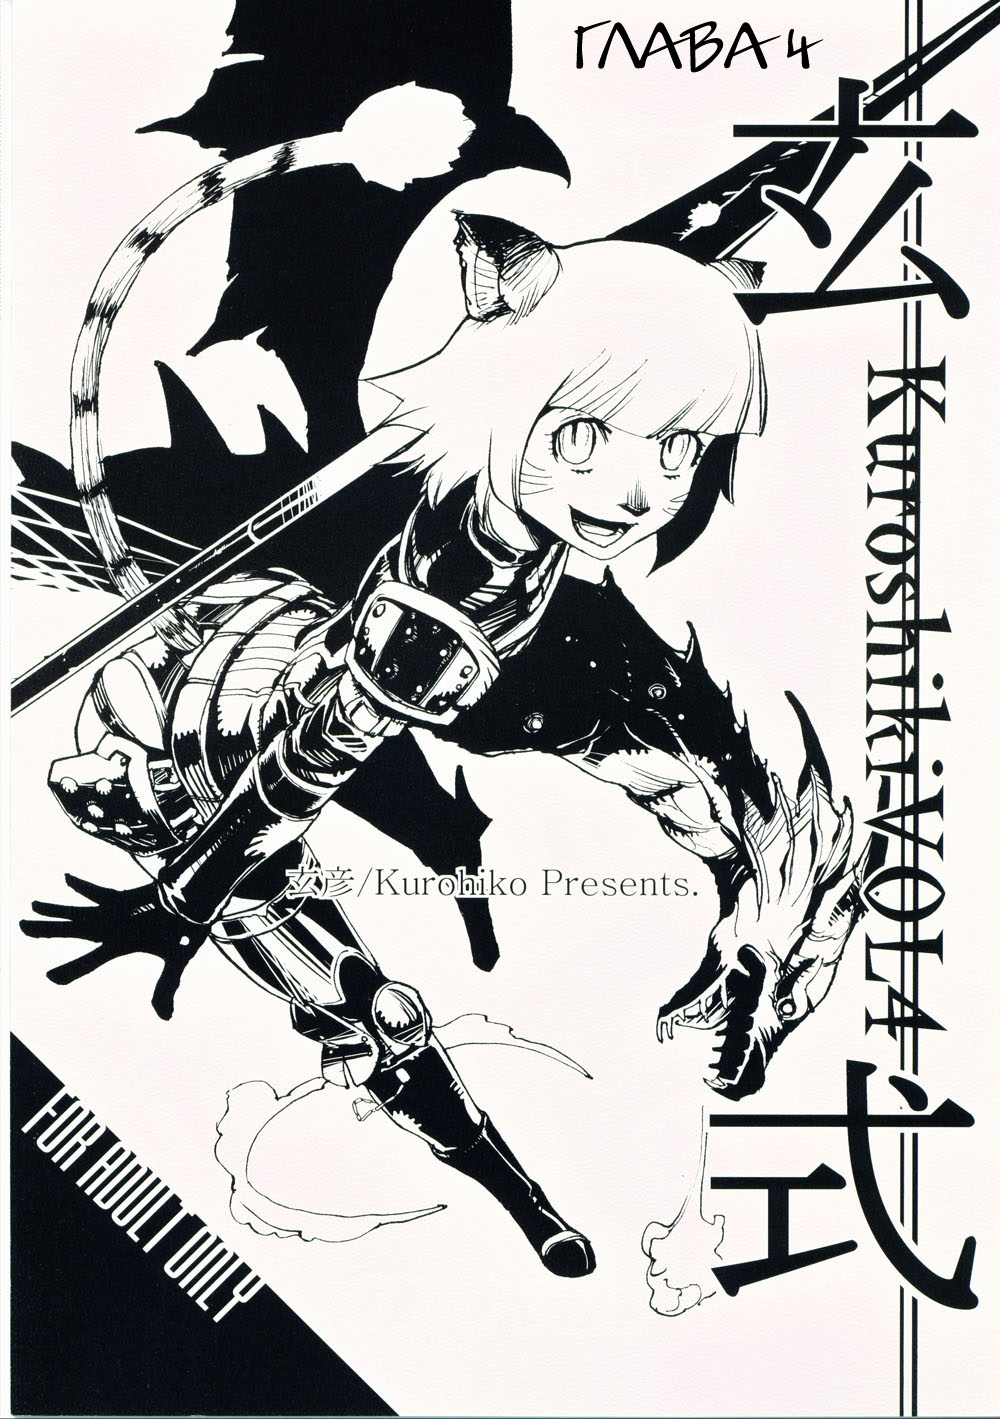 C69 Kuroshiki Kurohiko Kuroshiki Vol. 4 Final Fantasy XI Russian Witcher000 868881 0001